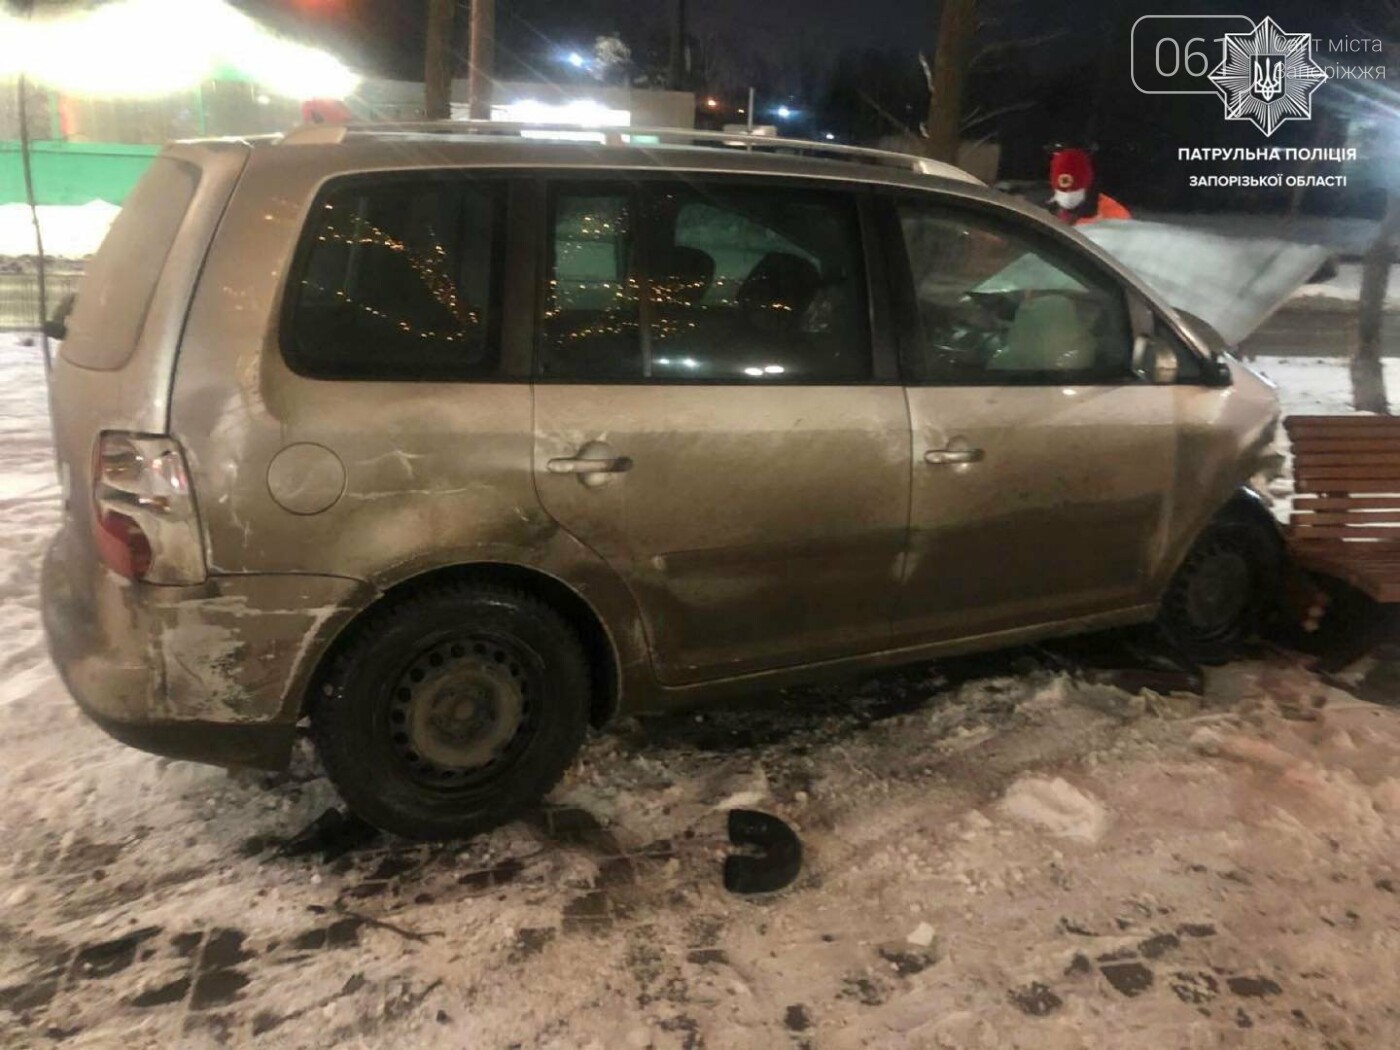 В Запорожье водитель Volkswagen проехал перекресток на красный, протаранил авто и влетел в лавочку, - ФОТО